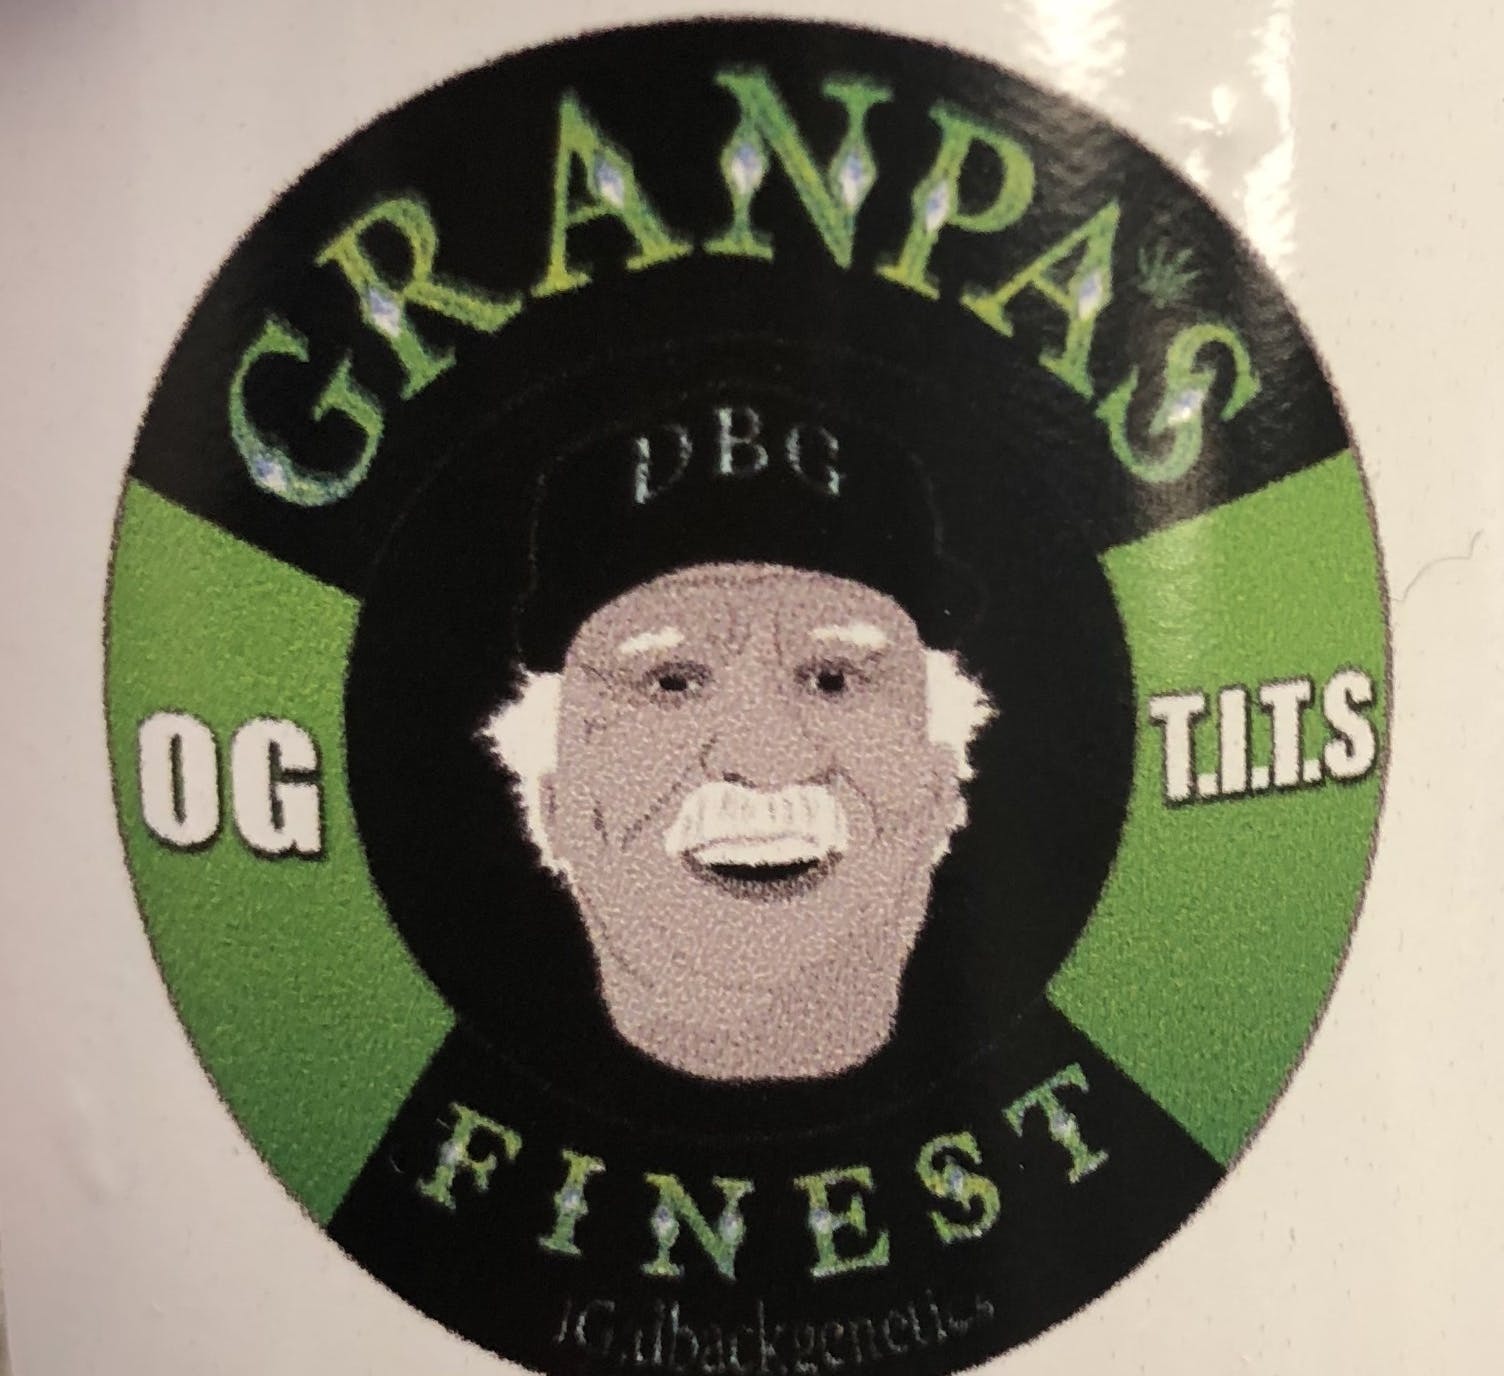 Granpa's Finest - Golden T.I.T.S.